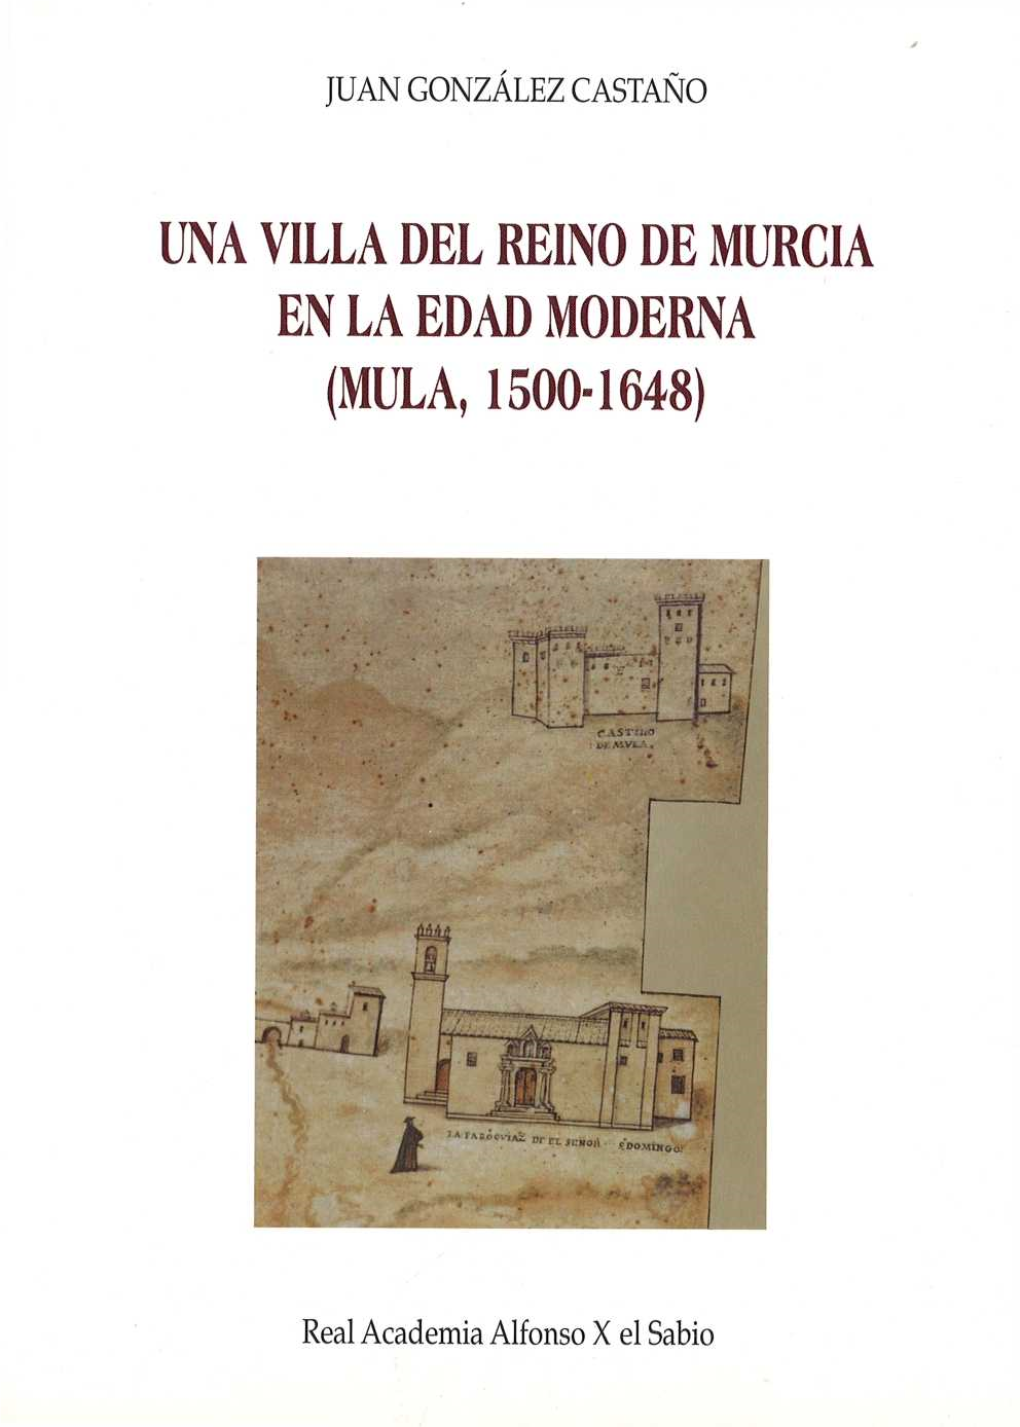 UNA VILLA DEL REINO DE MURCIA EN LA EDAD MODERNA (Mt~LA, 1500-1648)